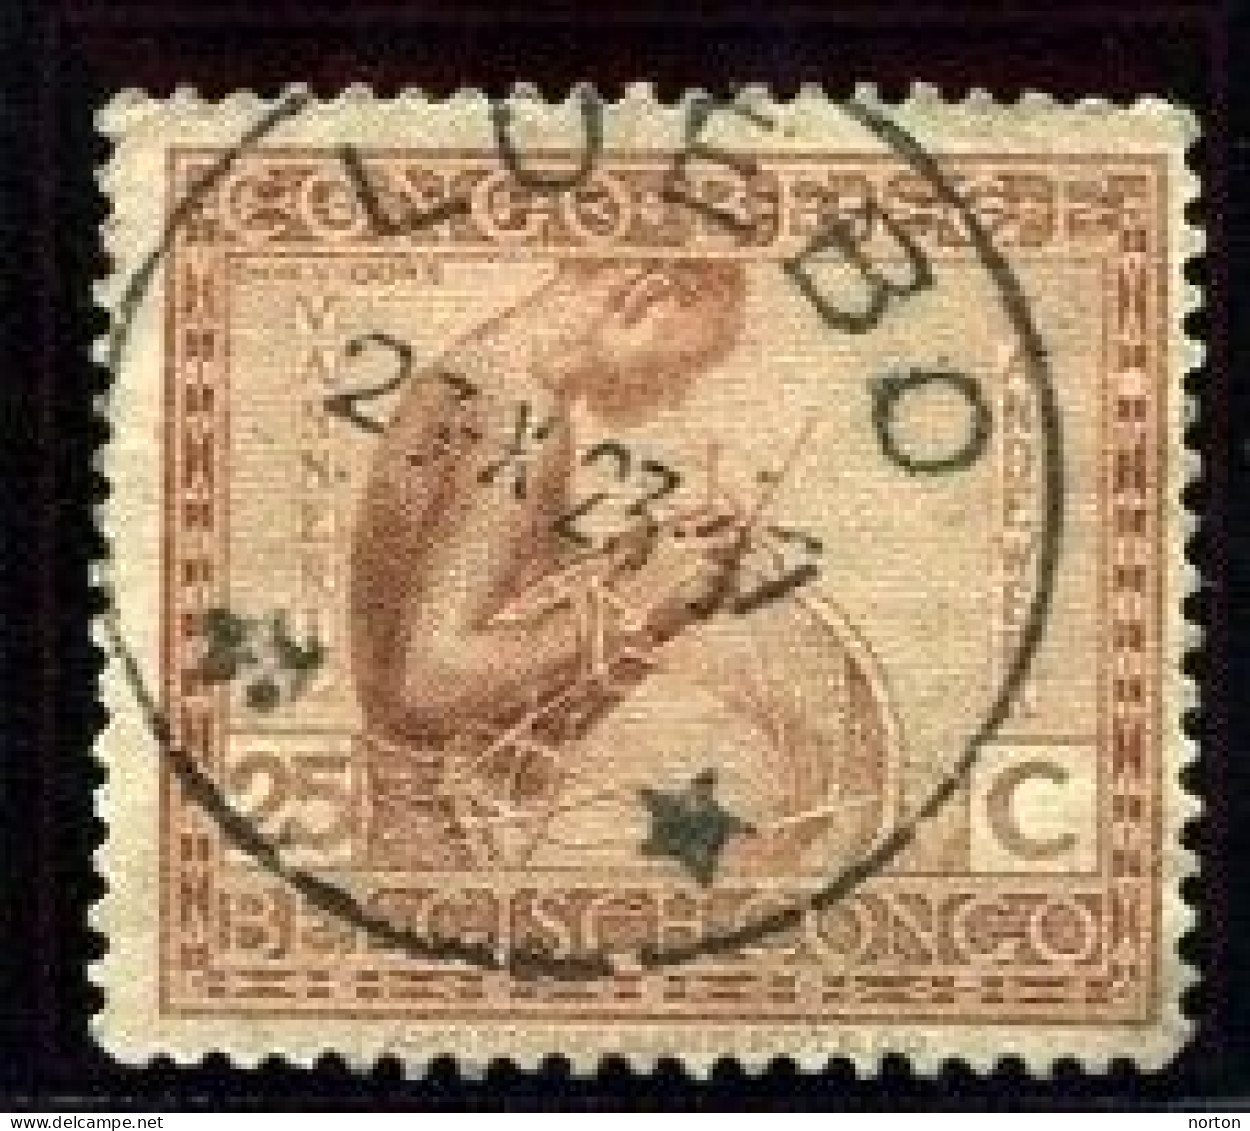 Congo Luebo Oblit. Keach 5D1-Dmyt Sur C.O.B. 110 Le 23/10/1923 - Oblitérés